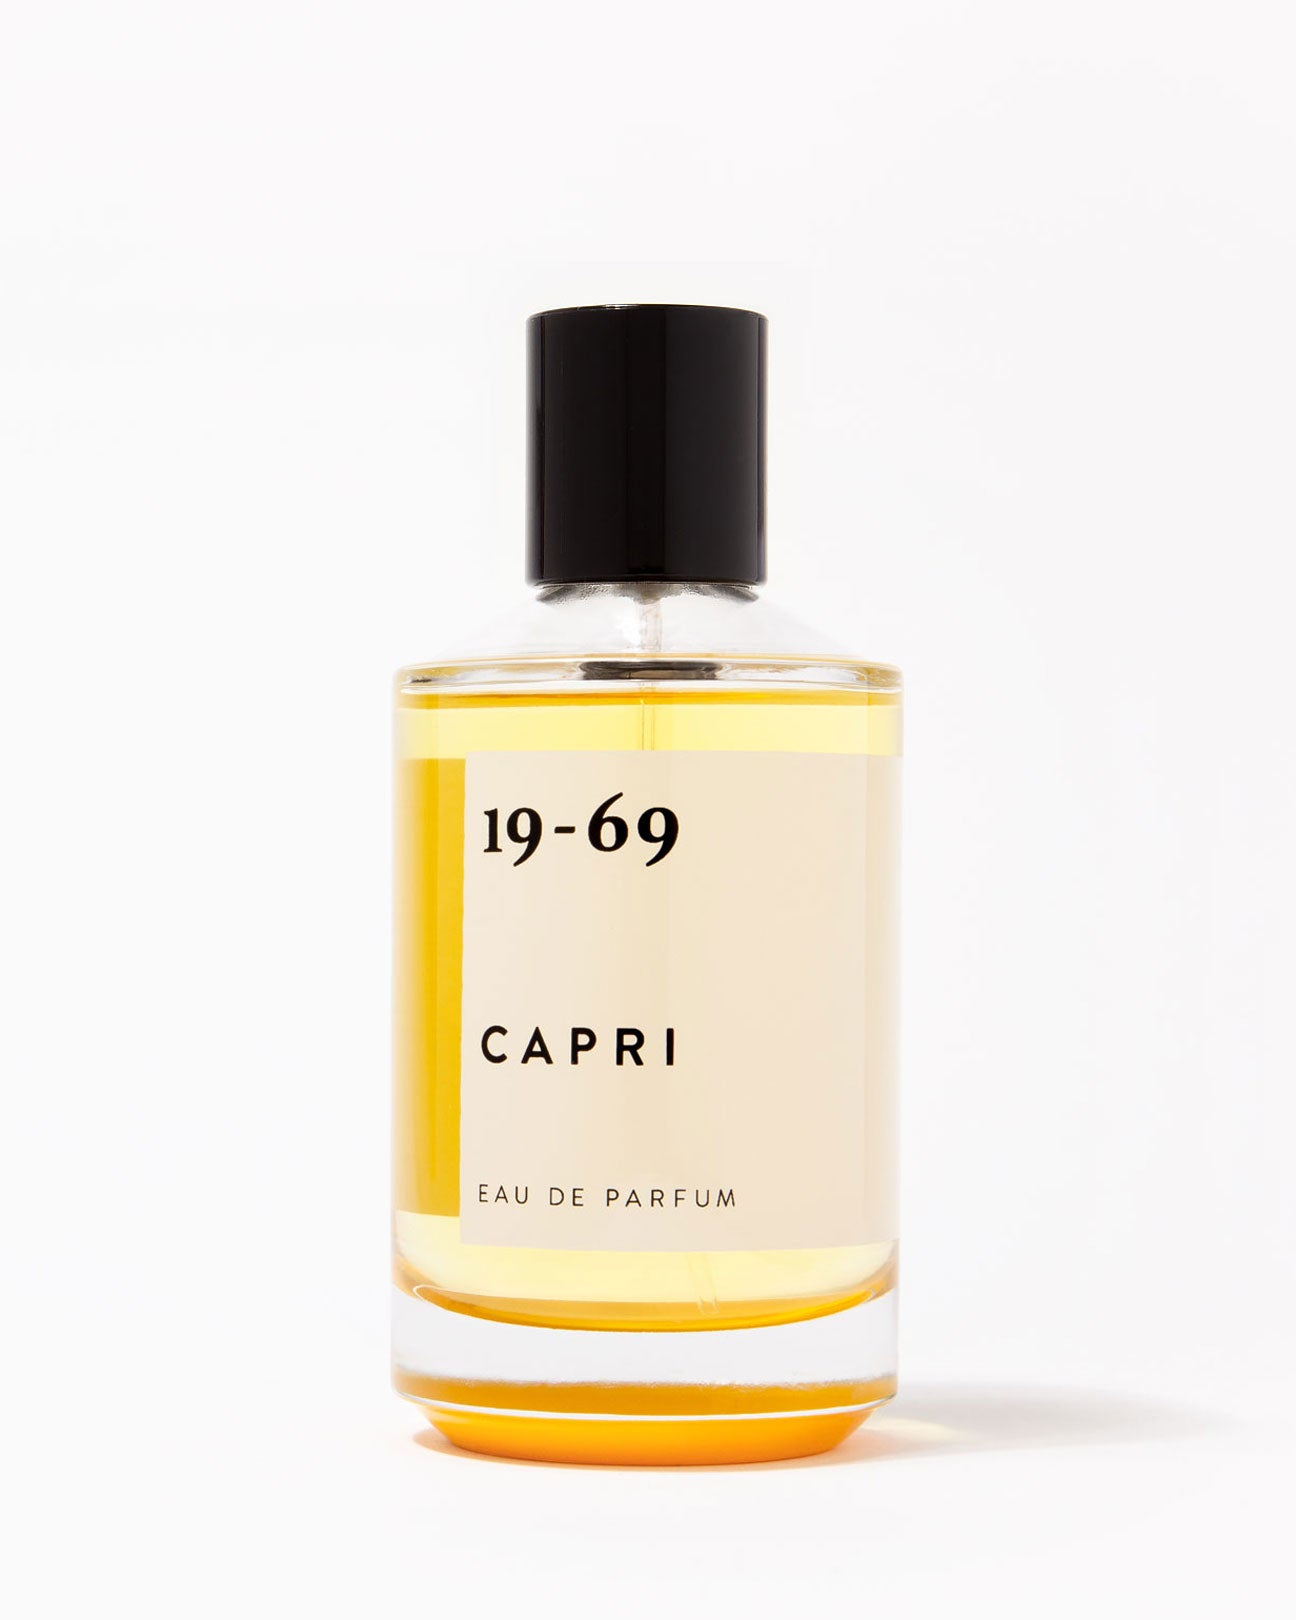 19-69 Eau De Parfum 30ml. in Capri available at Lahn.shop